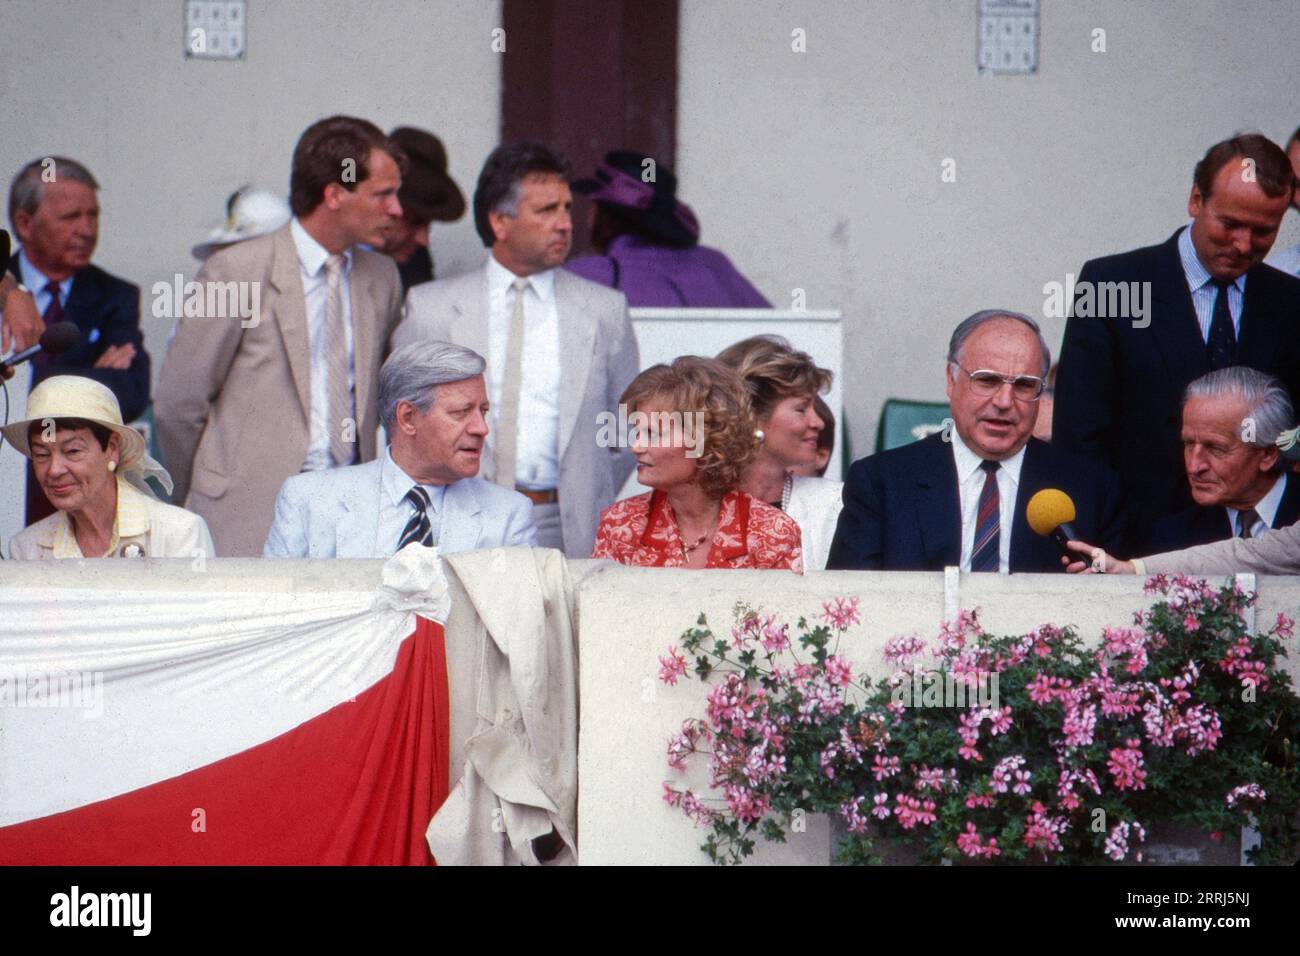 Zuschauer beim Derby, 1986: Loki Schmidt, Helmut Schmidt, Hannelore Kohl und Helmut Kohl. Stock Photo